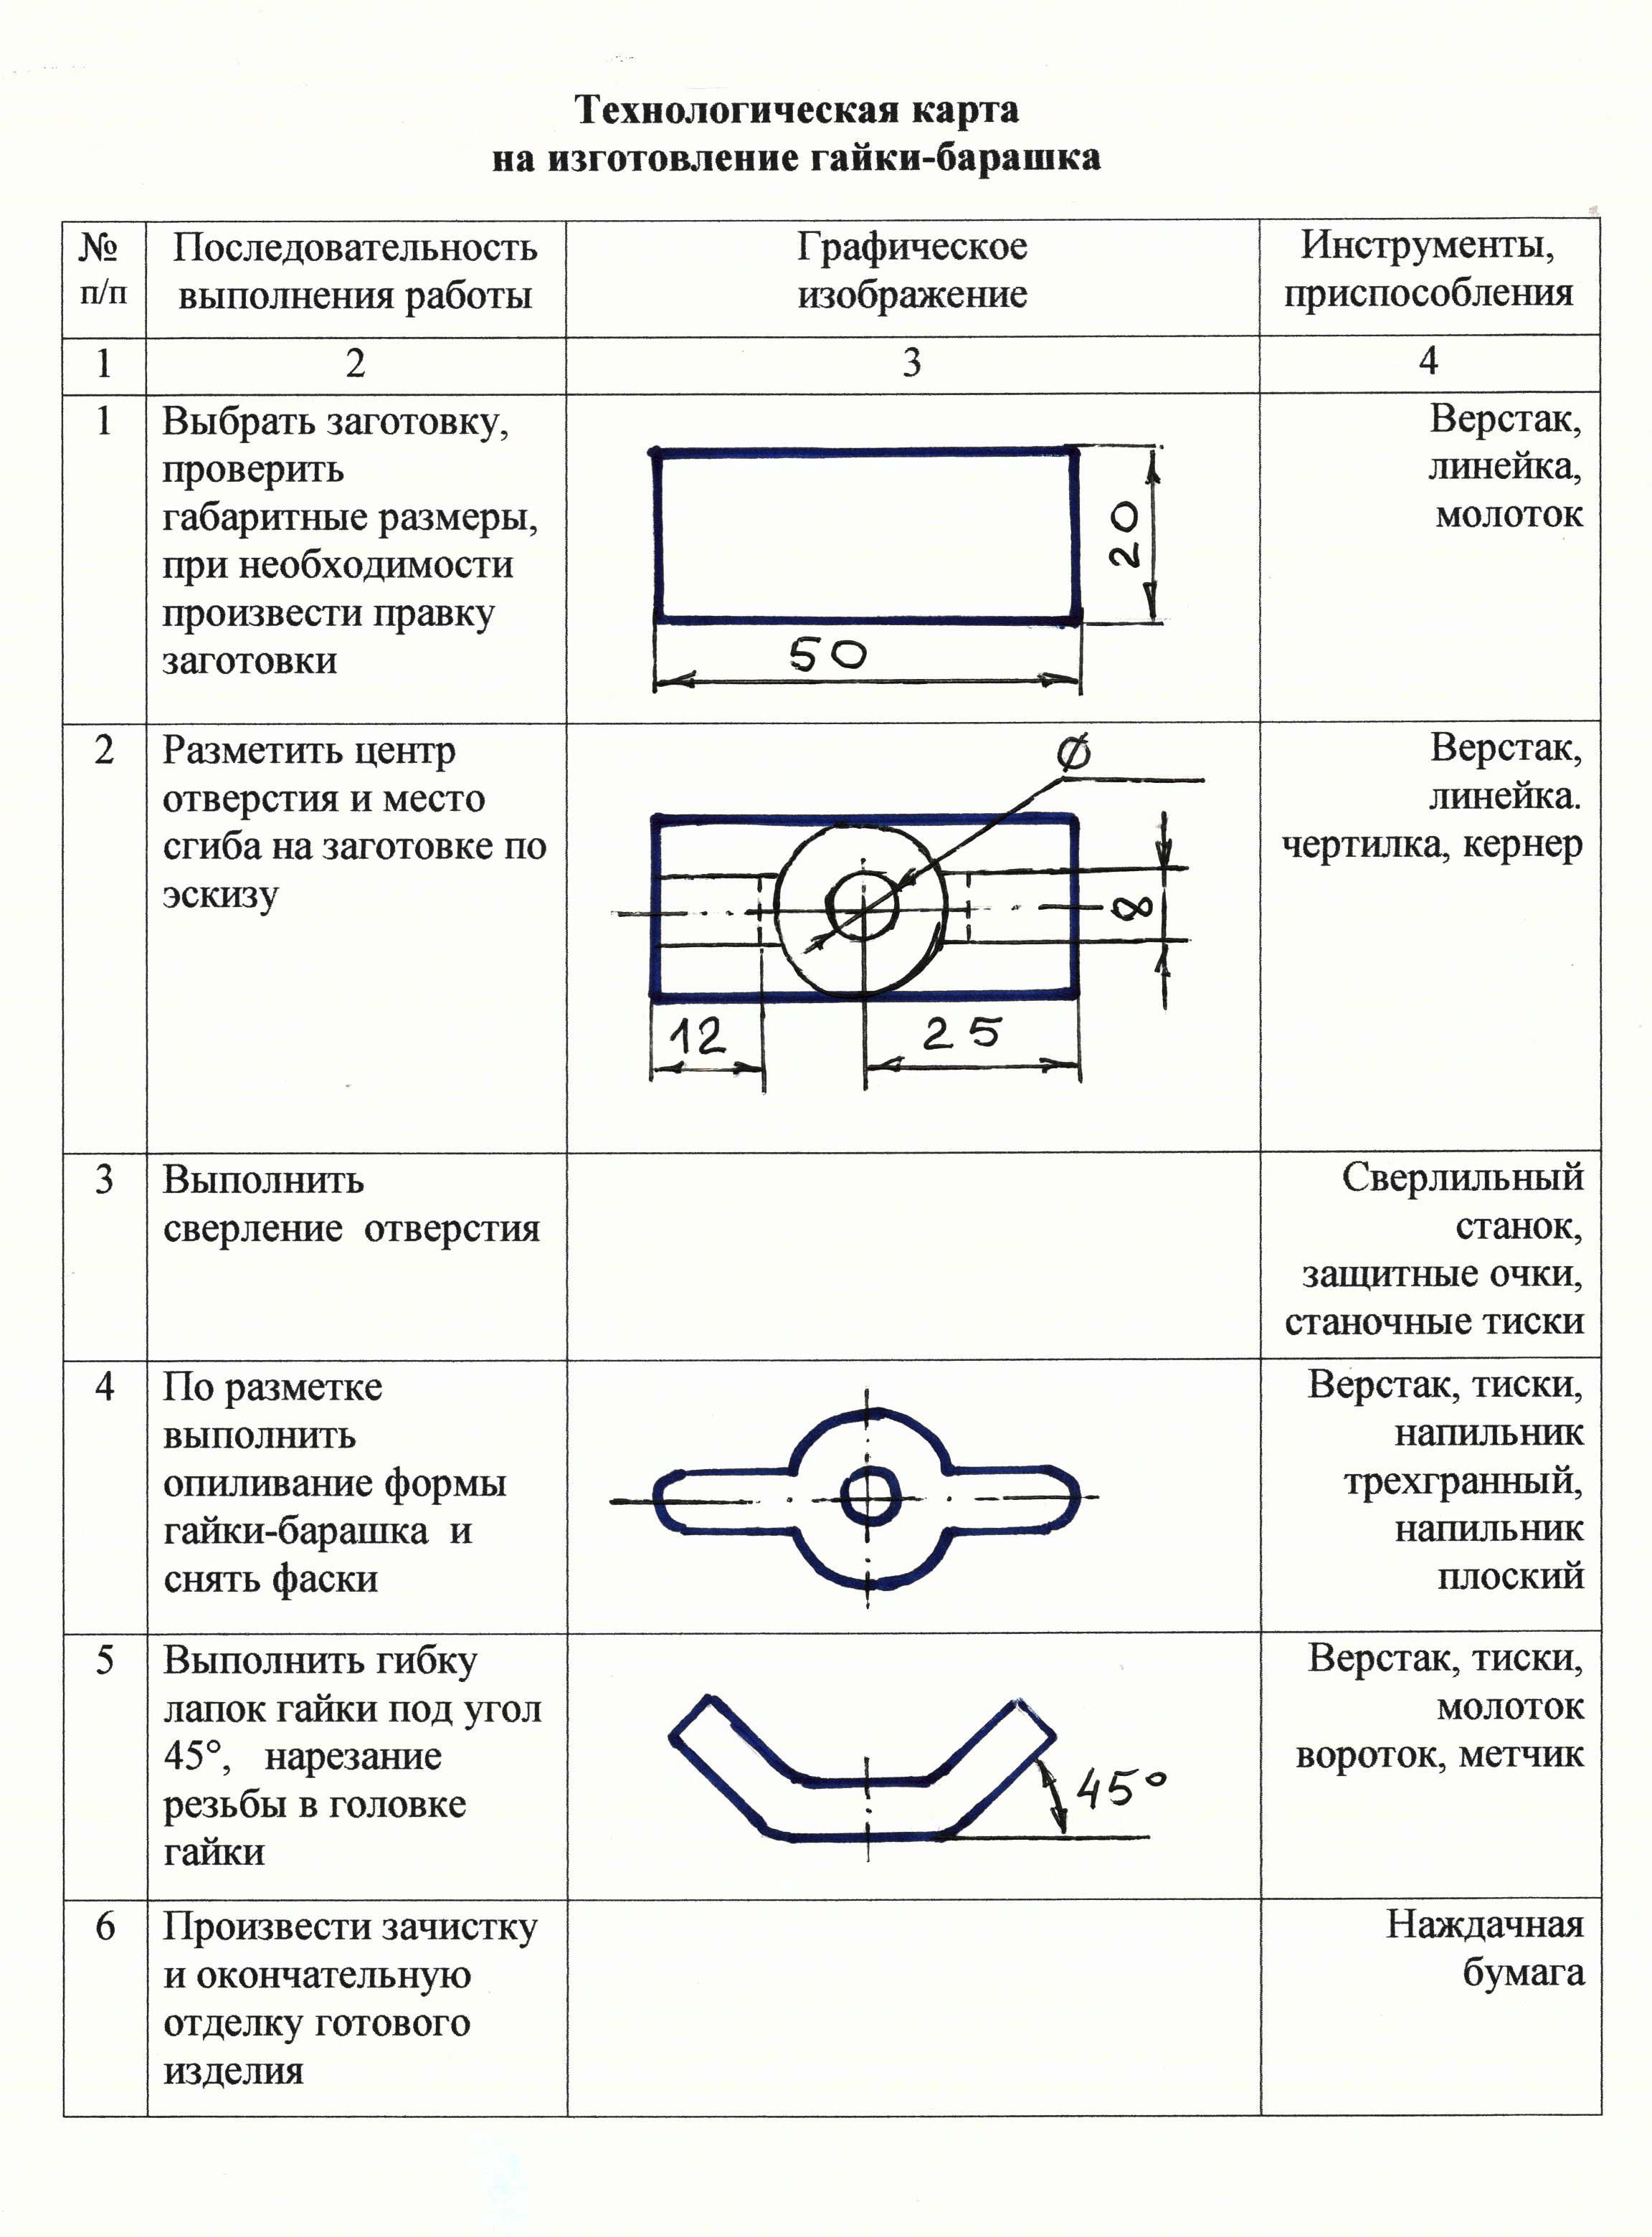 Технологическая карта изготовления гайки м10